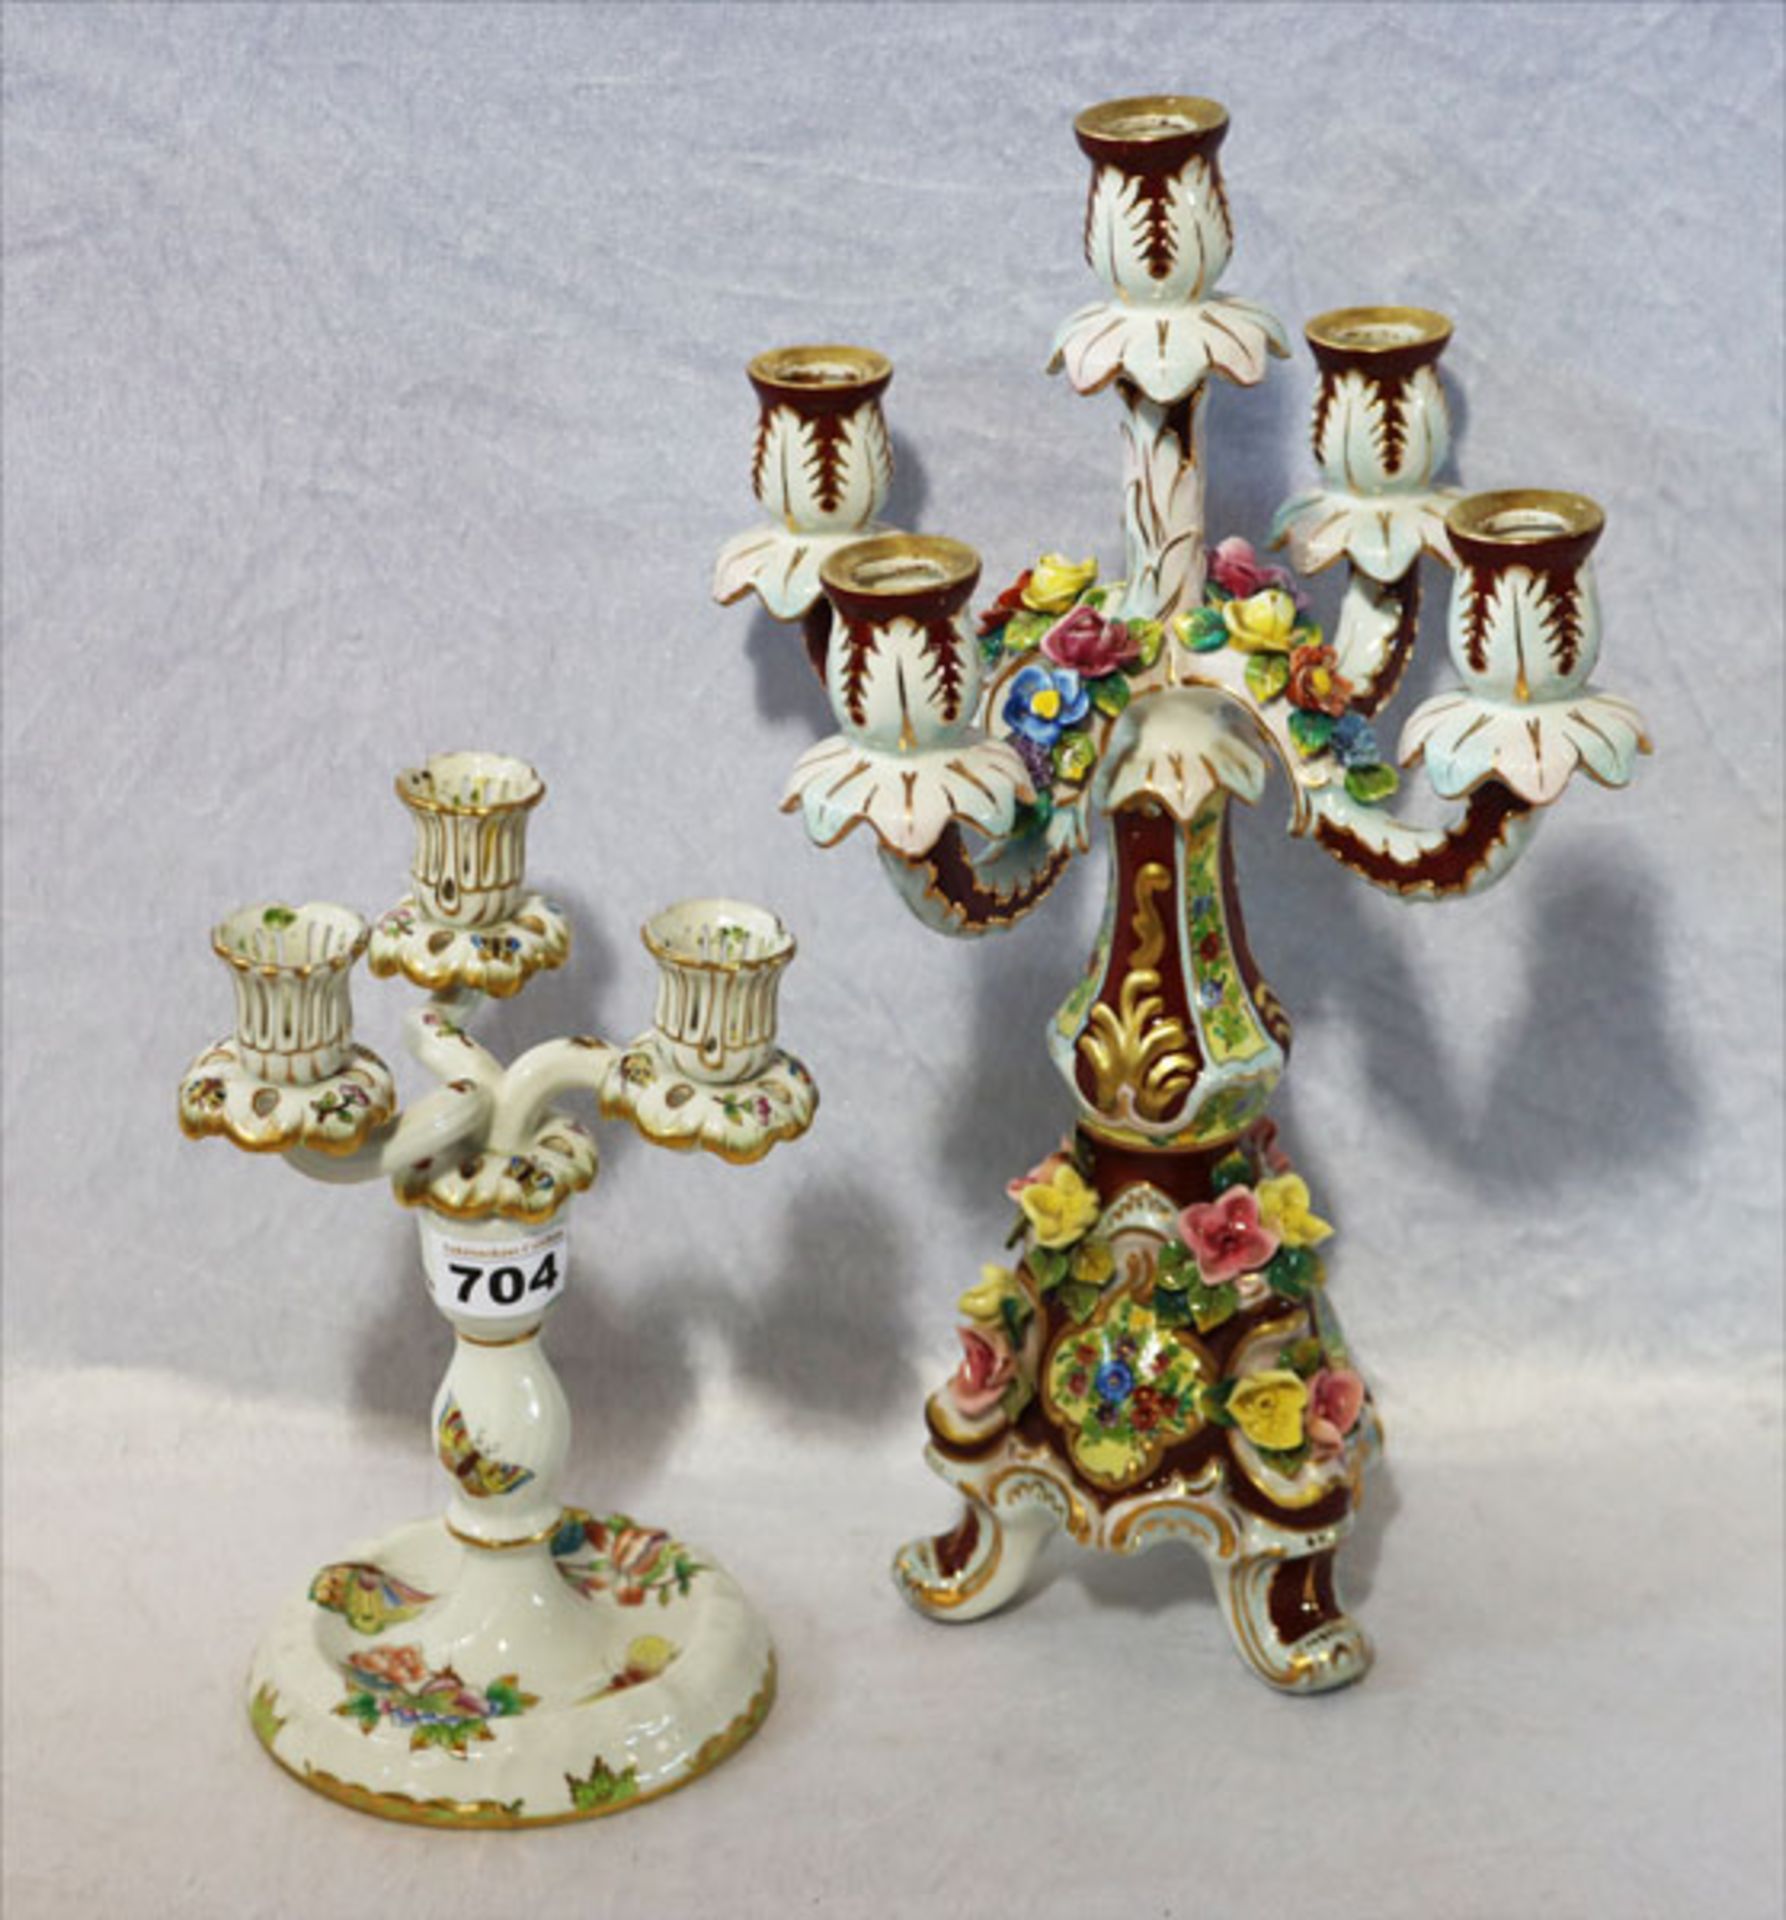 Herend Porzellan Kerzenleuchter, 3-armig, Dekor Victoria, eine Tülle beschädigt und geklebt, H 23